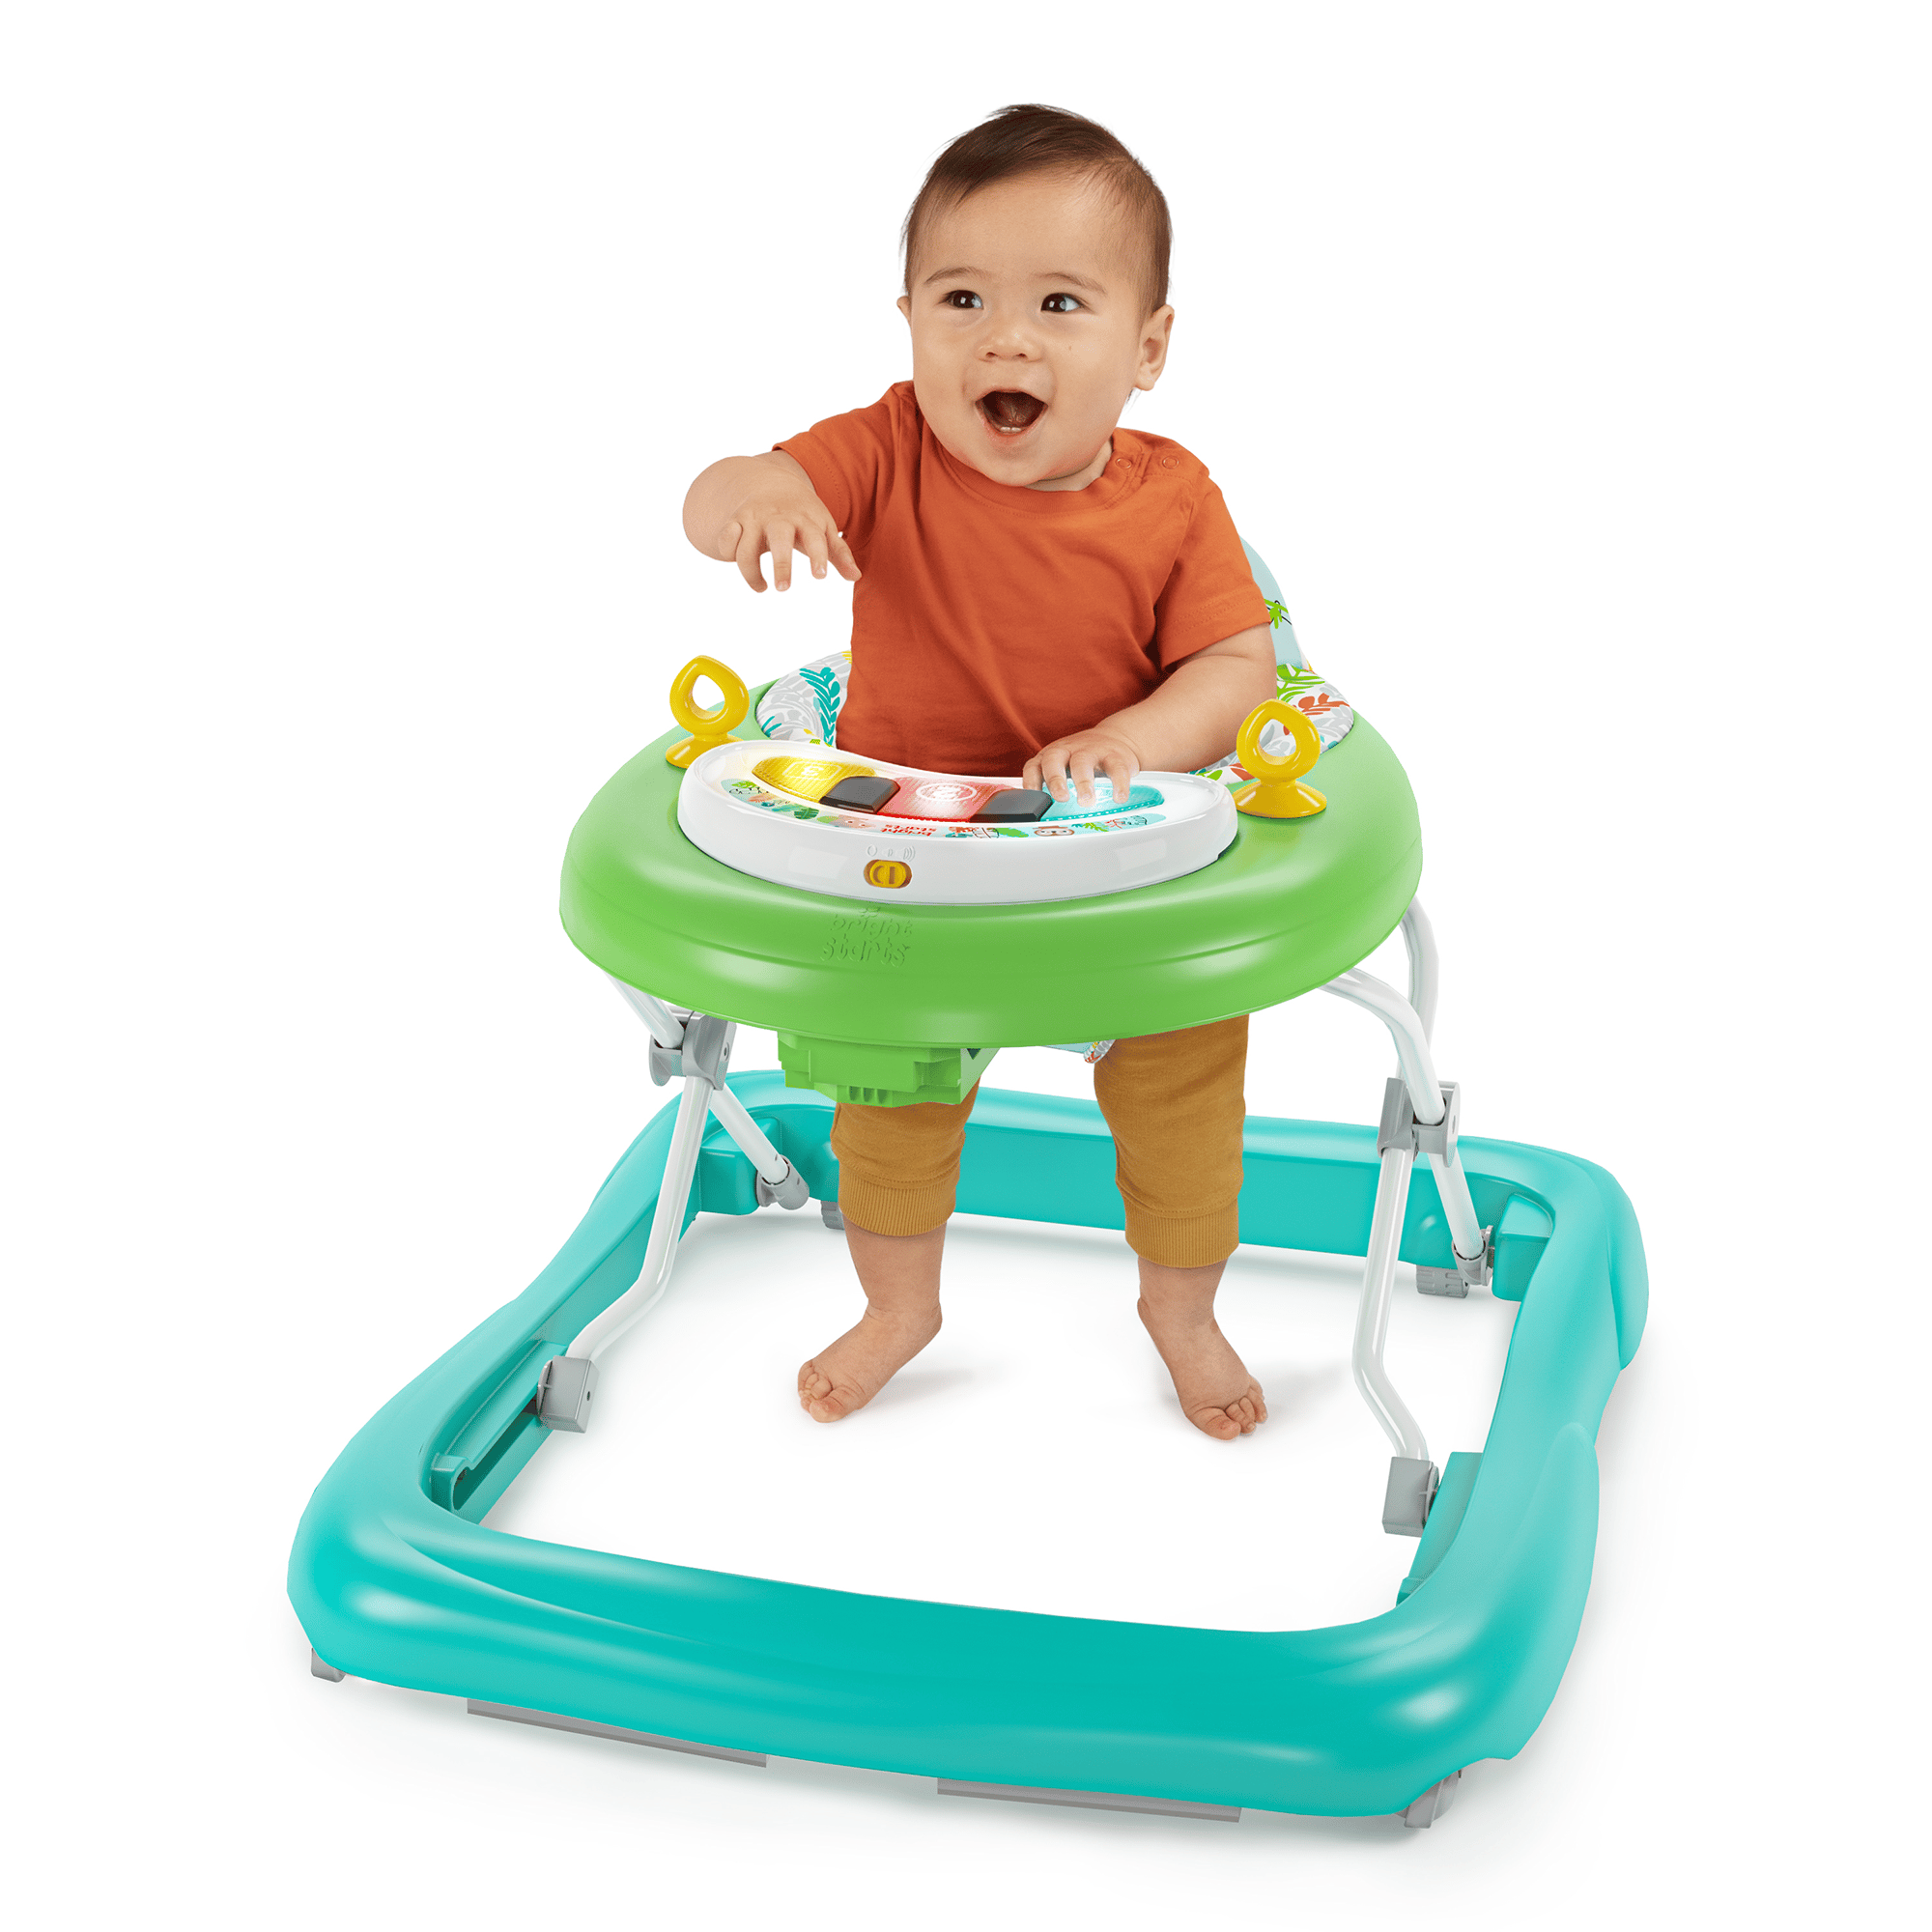 mit einstein | 2-in-1 BabyOne Spielzeugstation baby Lauflernhilfe | Türkis